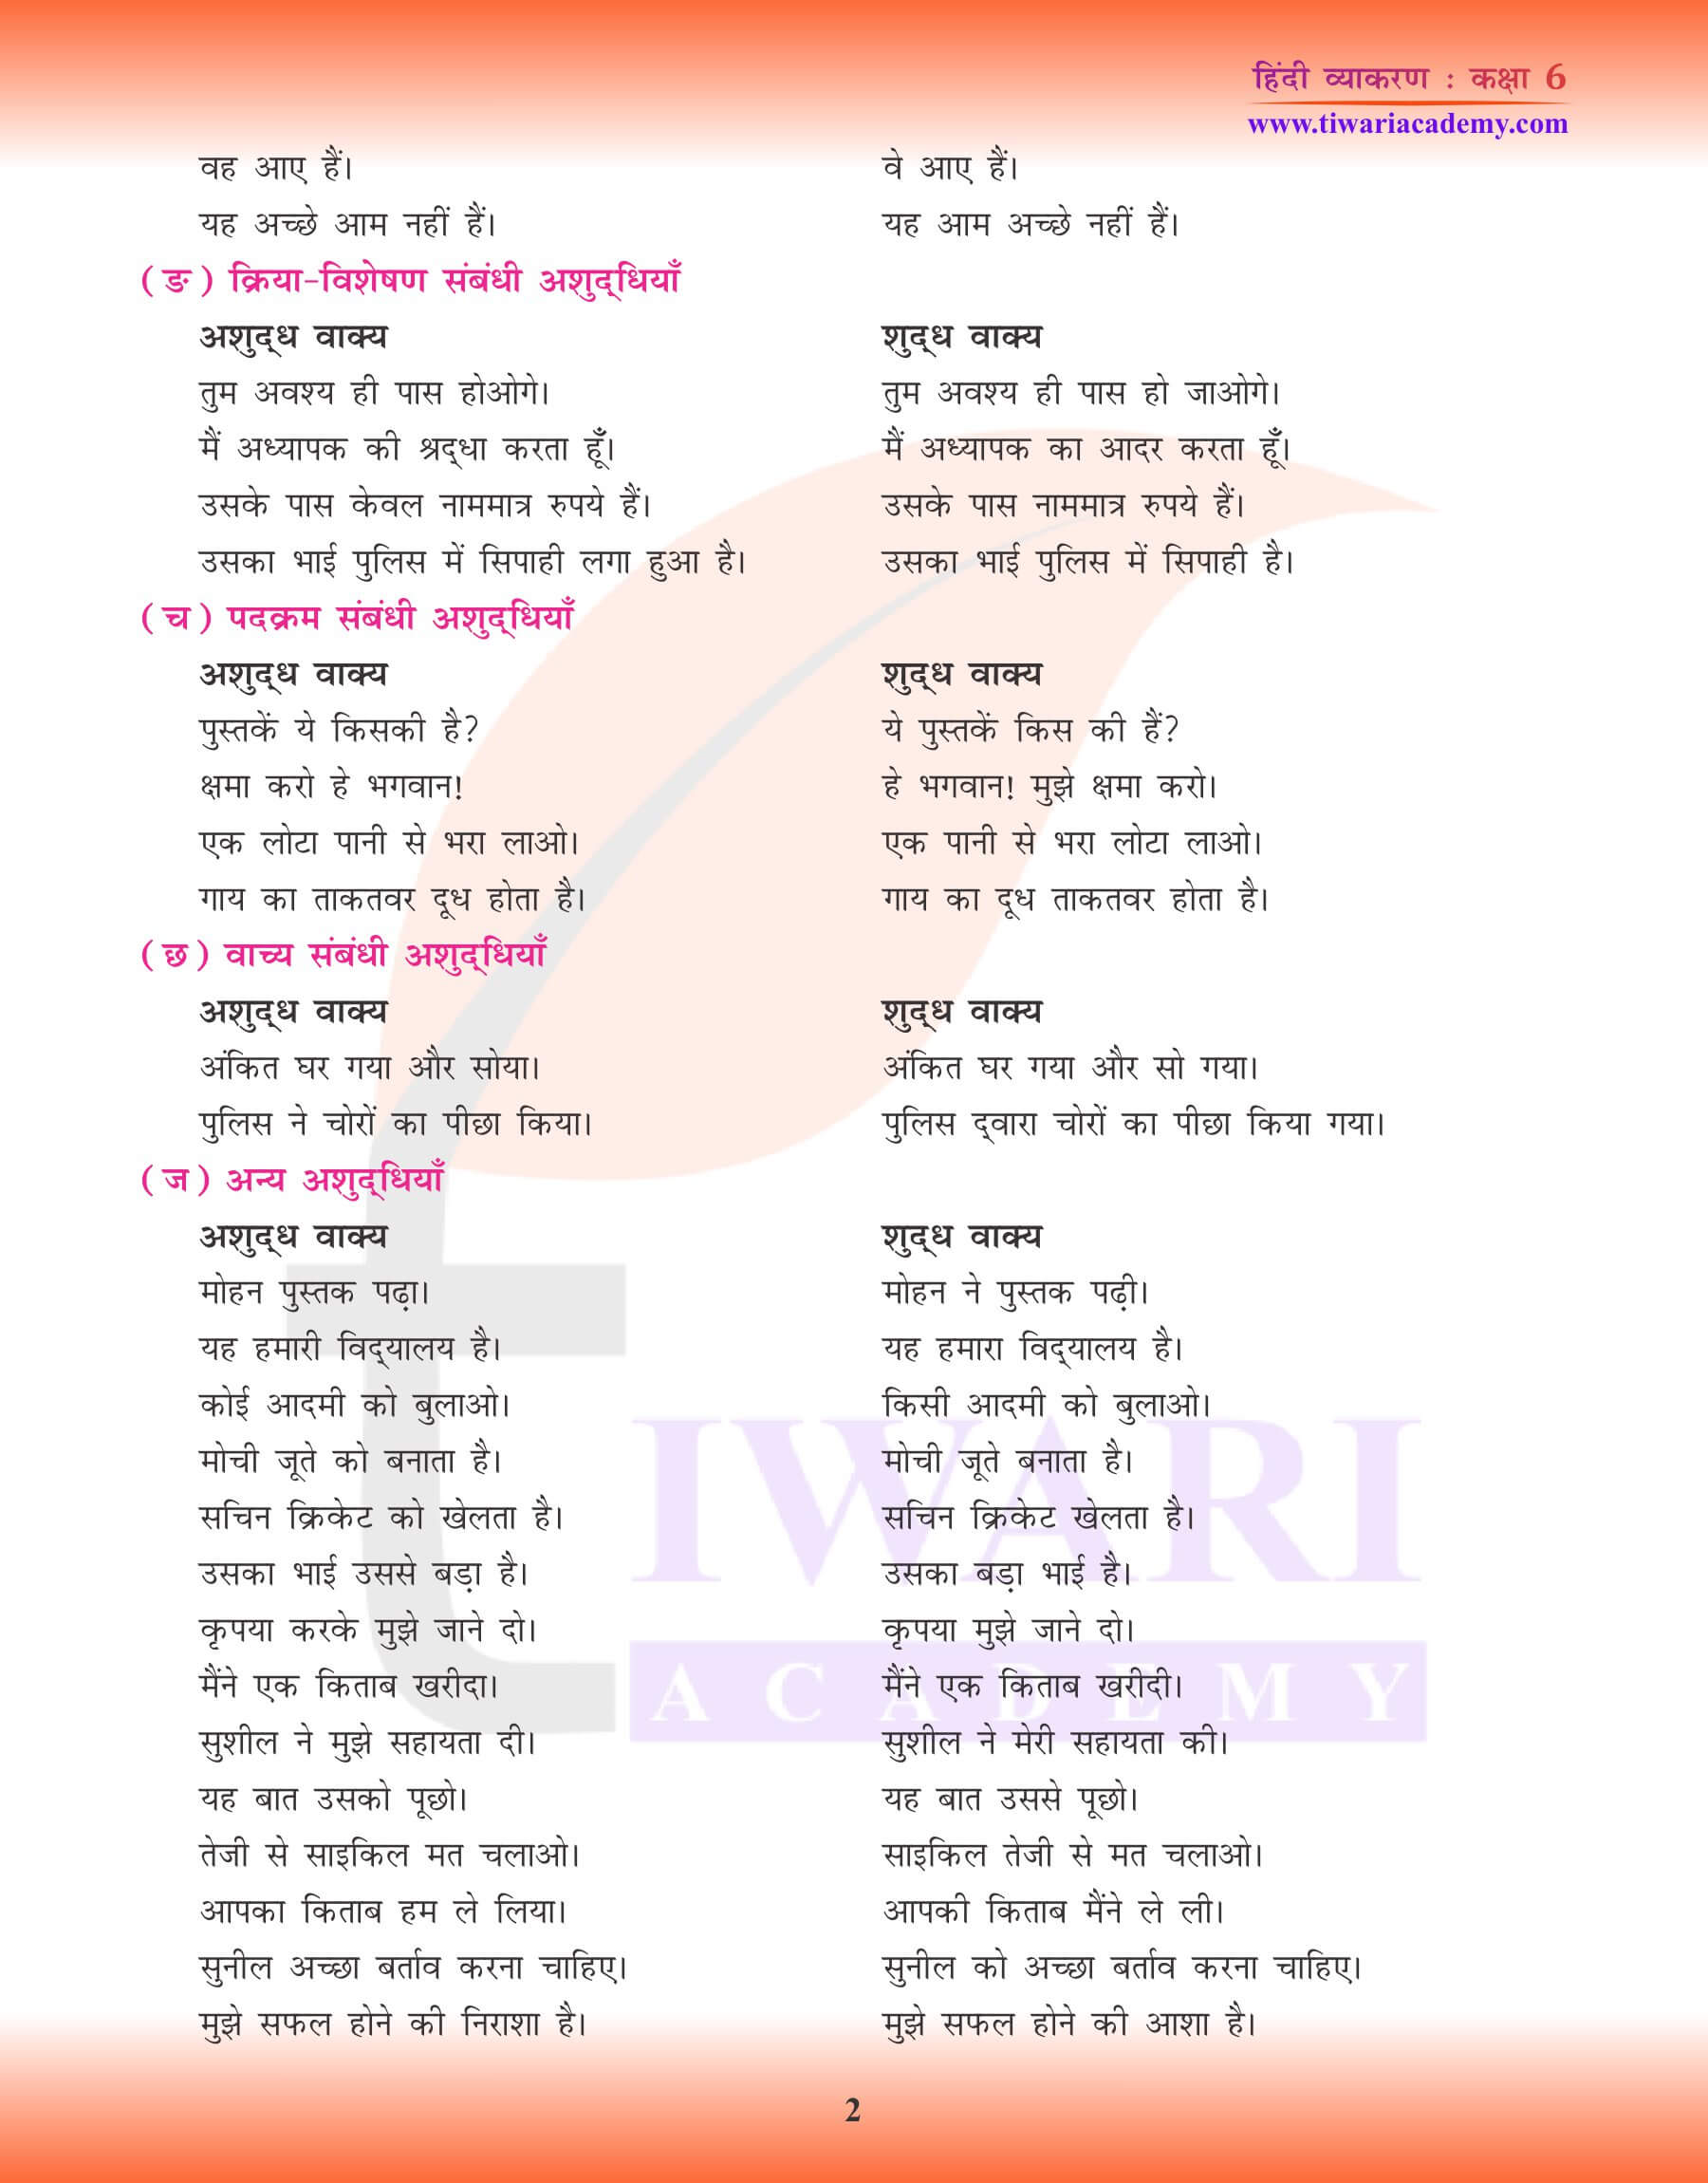 कक्षा 6 हिंदी व्याकरण सामान्य अशुद्धियाँ के लिए पठन सामग्री